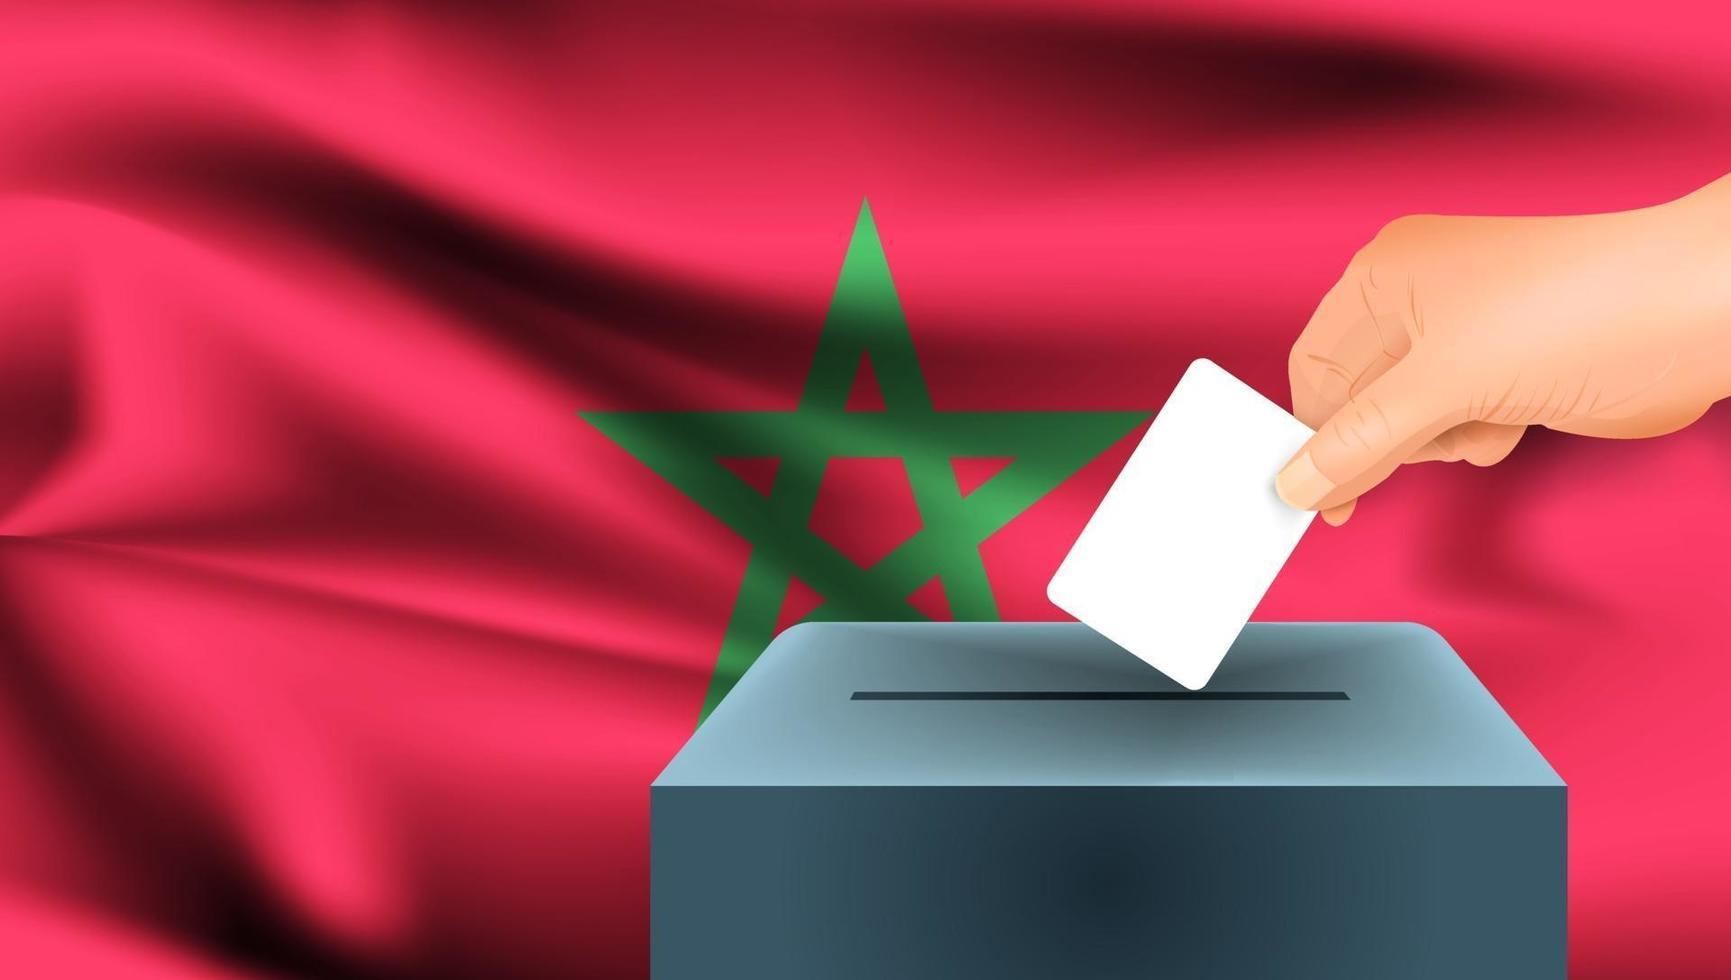 جان فيليب مواني: المغرب يقدم الدليل على أن ترسيخ الديمقراطية سلميا ممكن في العالم العربي